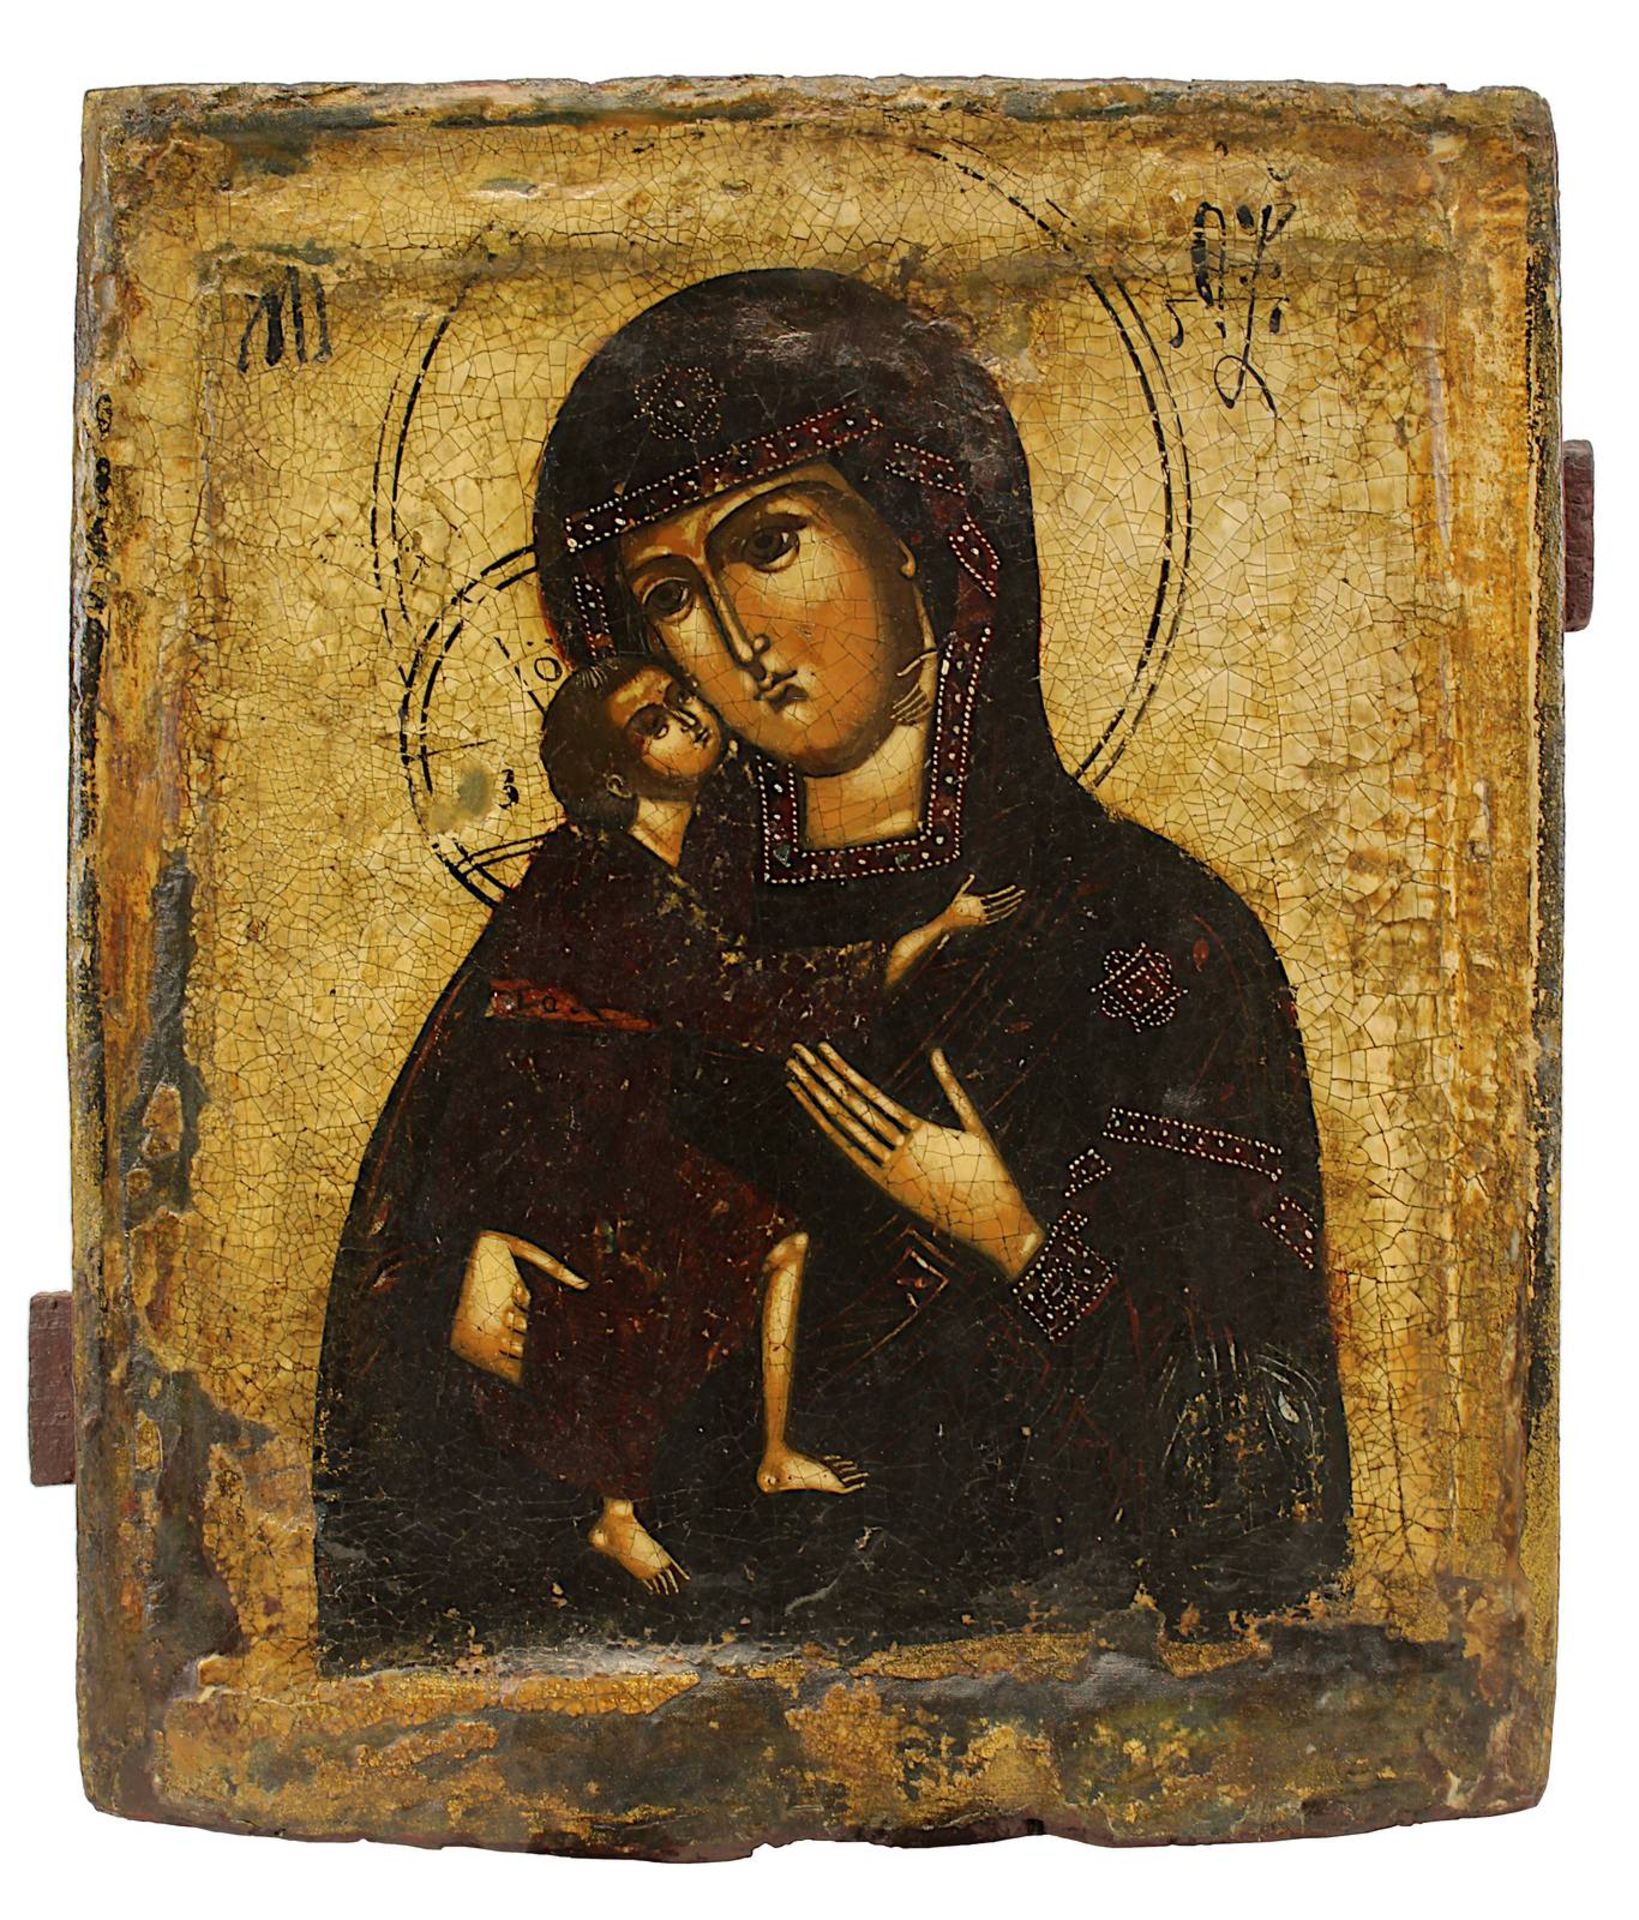 Ikone Gottesmutter Feodorowskaja, Russland 18. Jh., Tempera auf Leinwand/Holz, Darstellung der